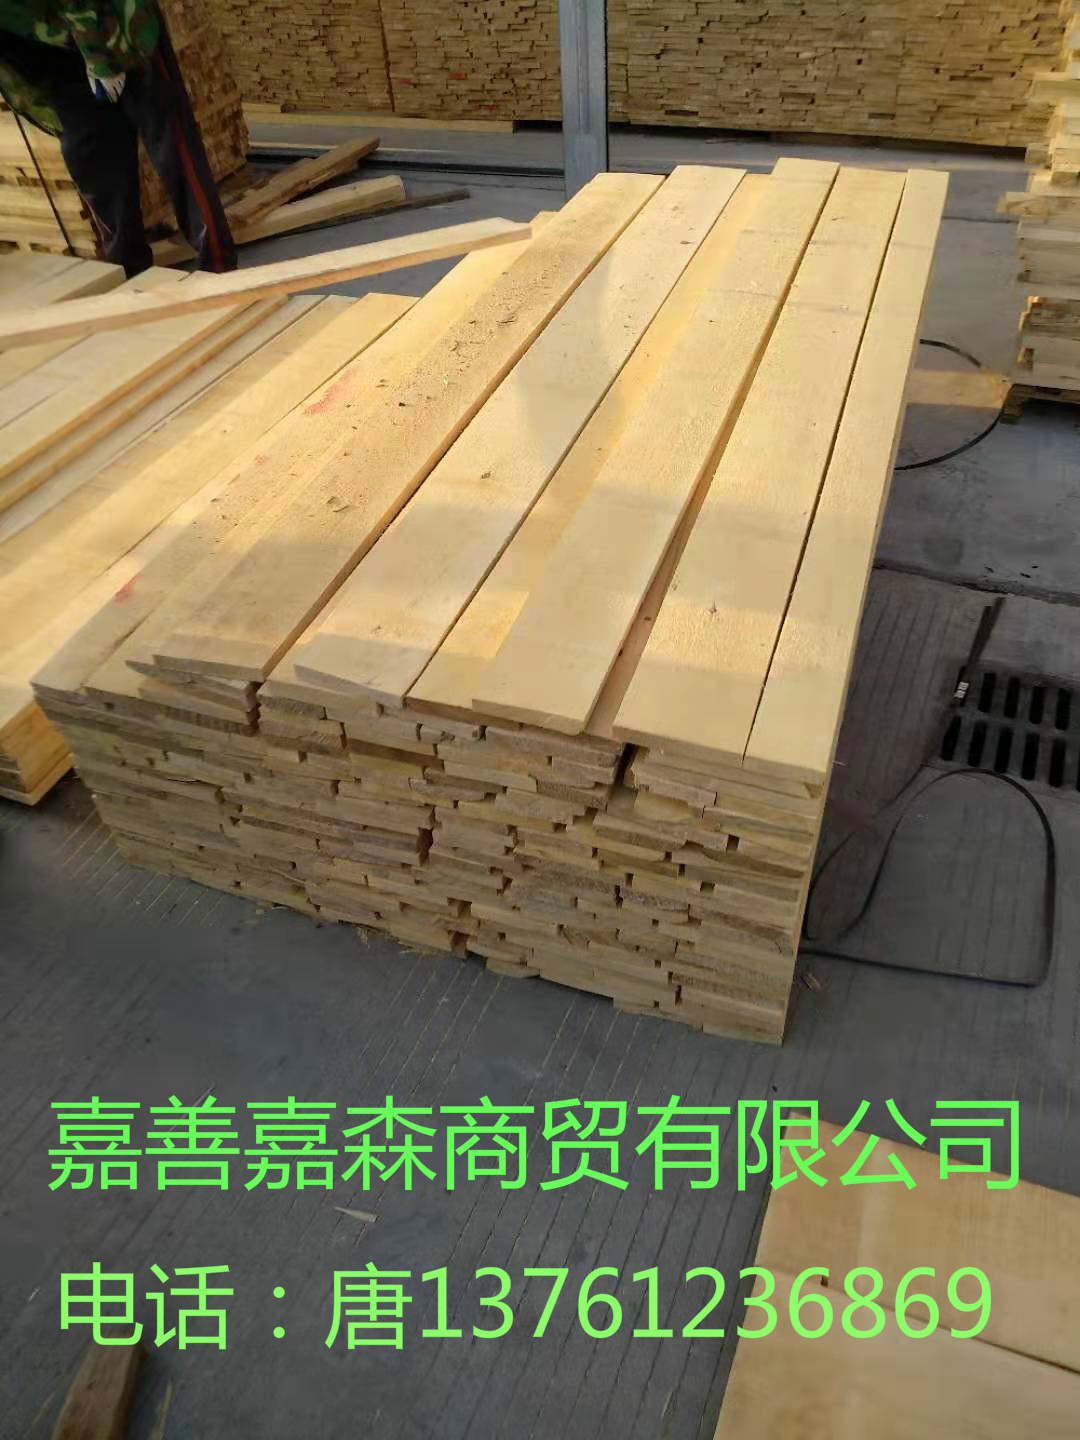 大量供应单面无节桦木实木板材厂家-供应商  上海桦木板材厂家